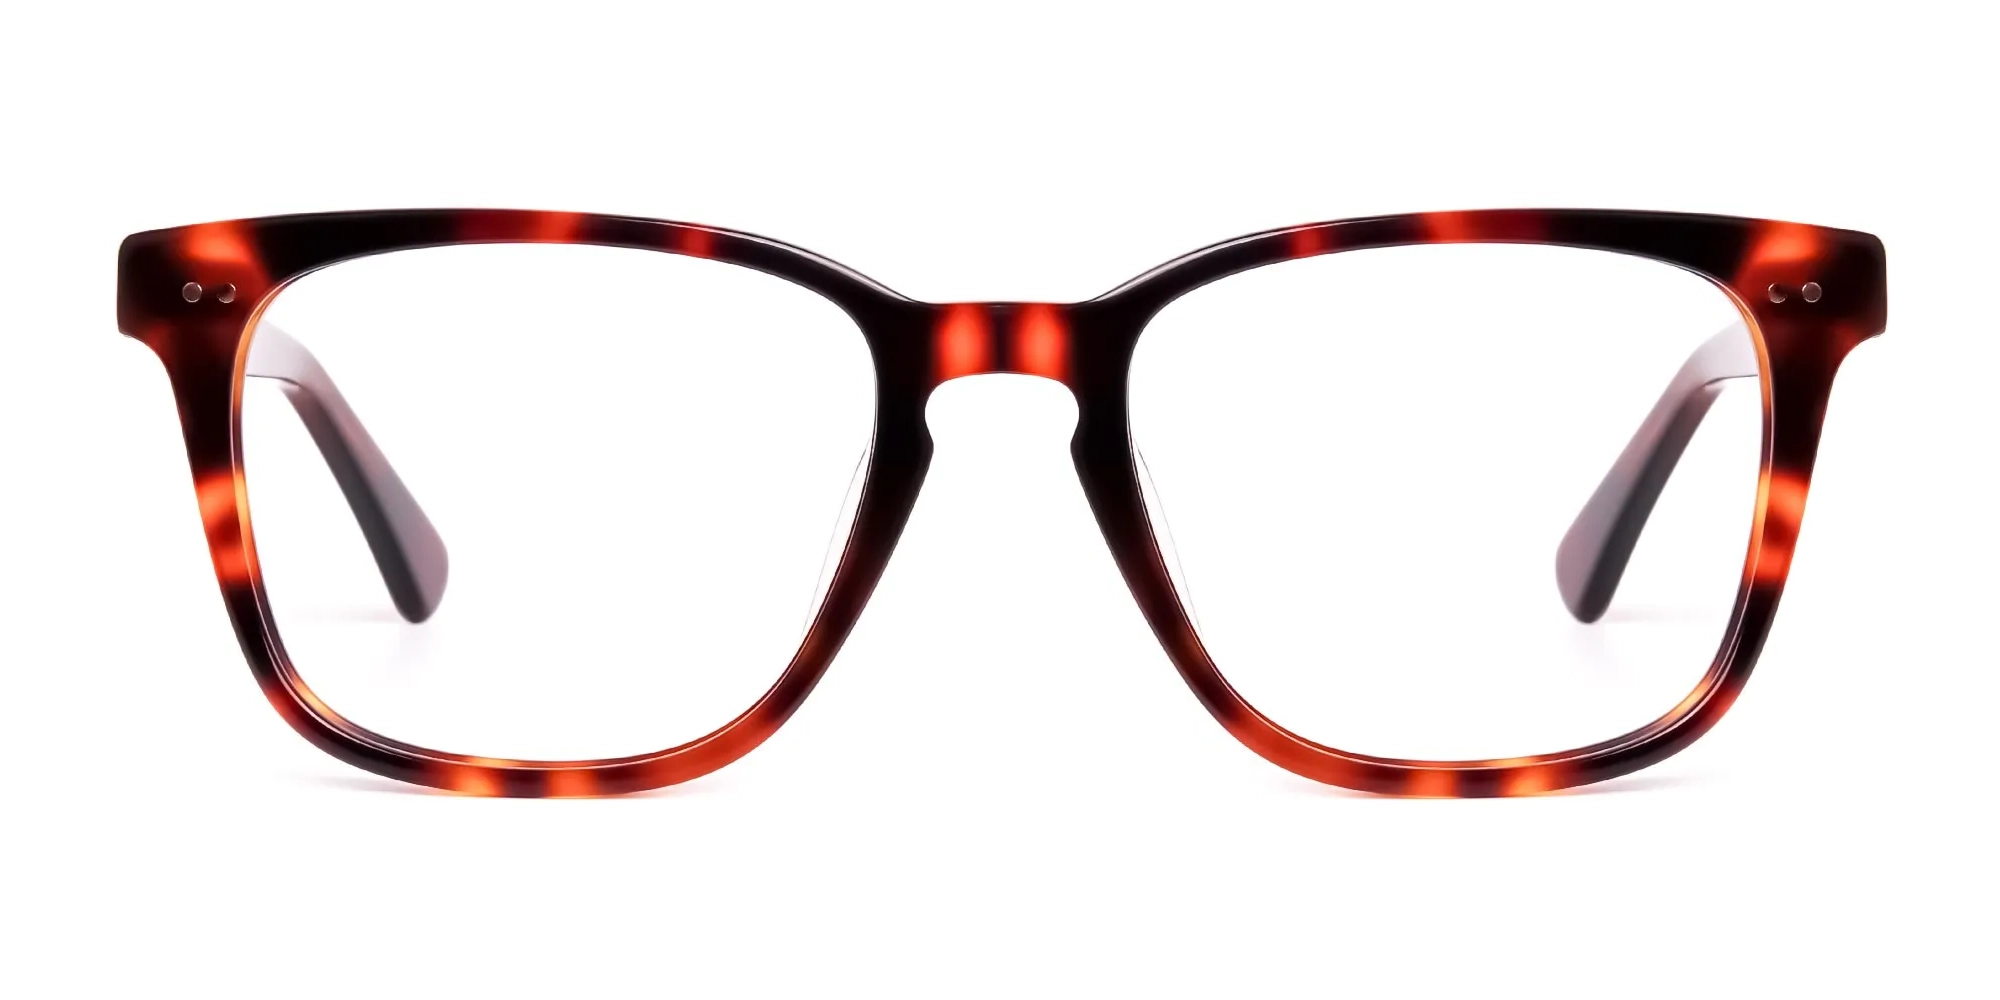 havana-and-tortoise-Shell-glasses-frames-2